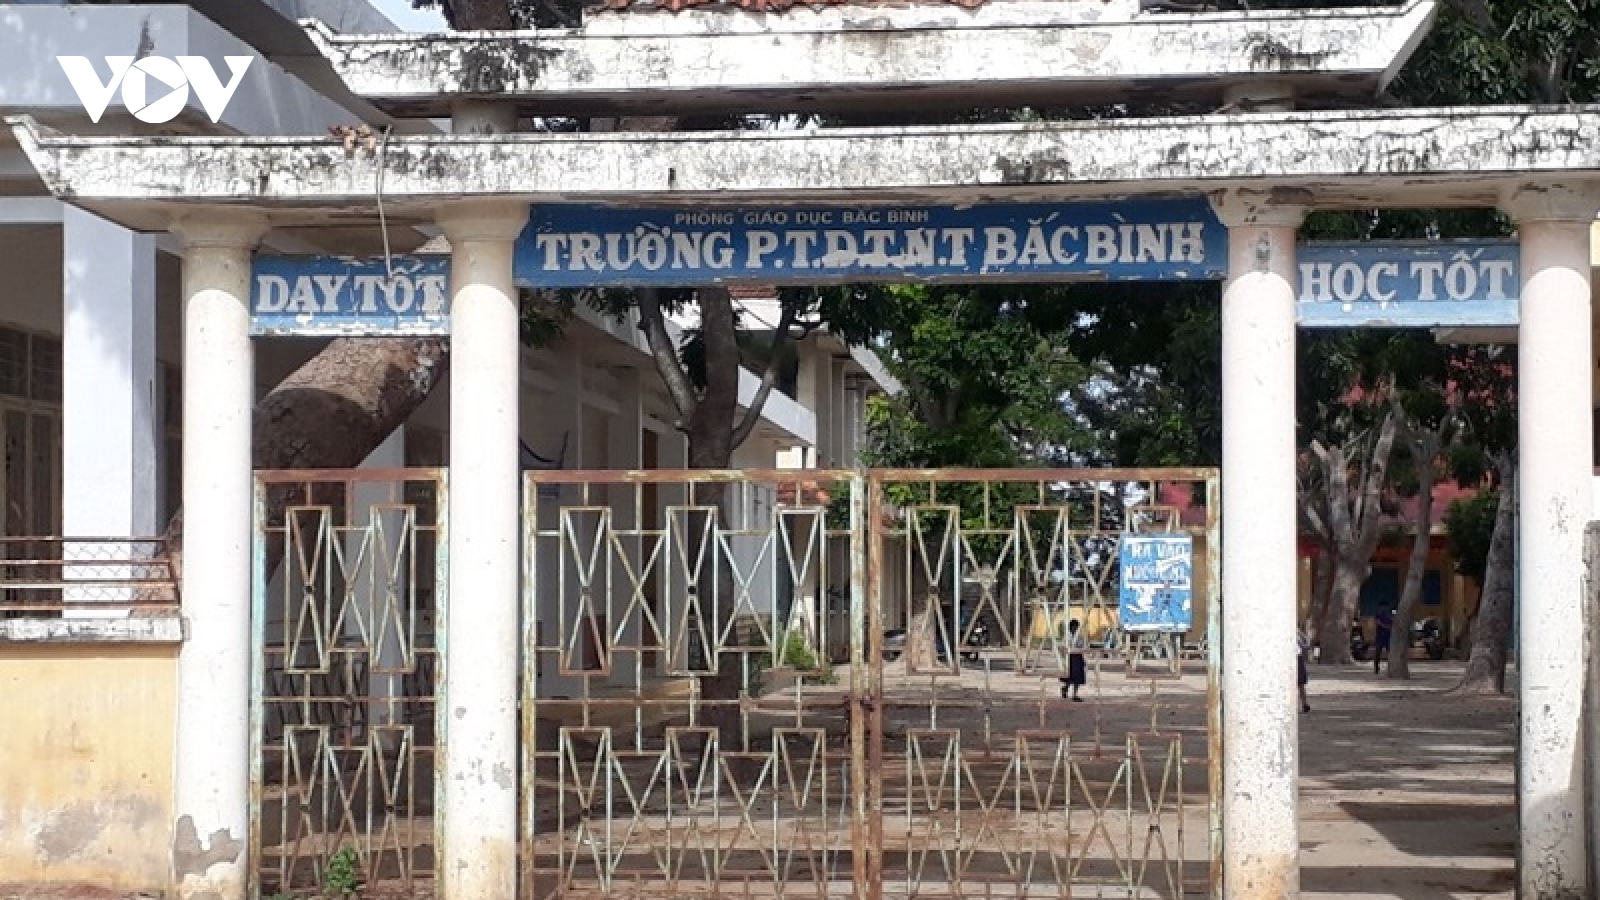 Trường PTDT Nội trú Bắc Bình, Bình Thuận xuống cấp nghiêm trọng